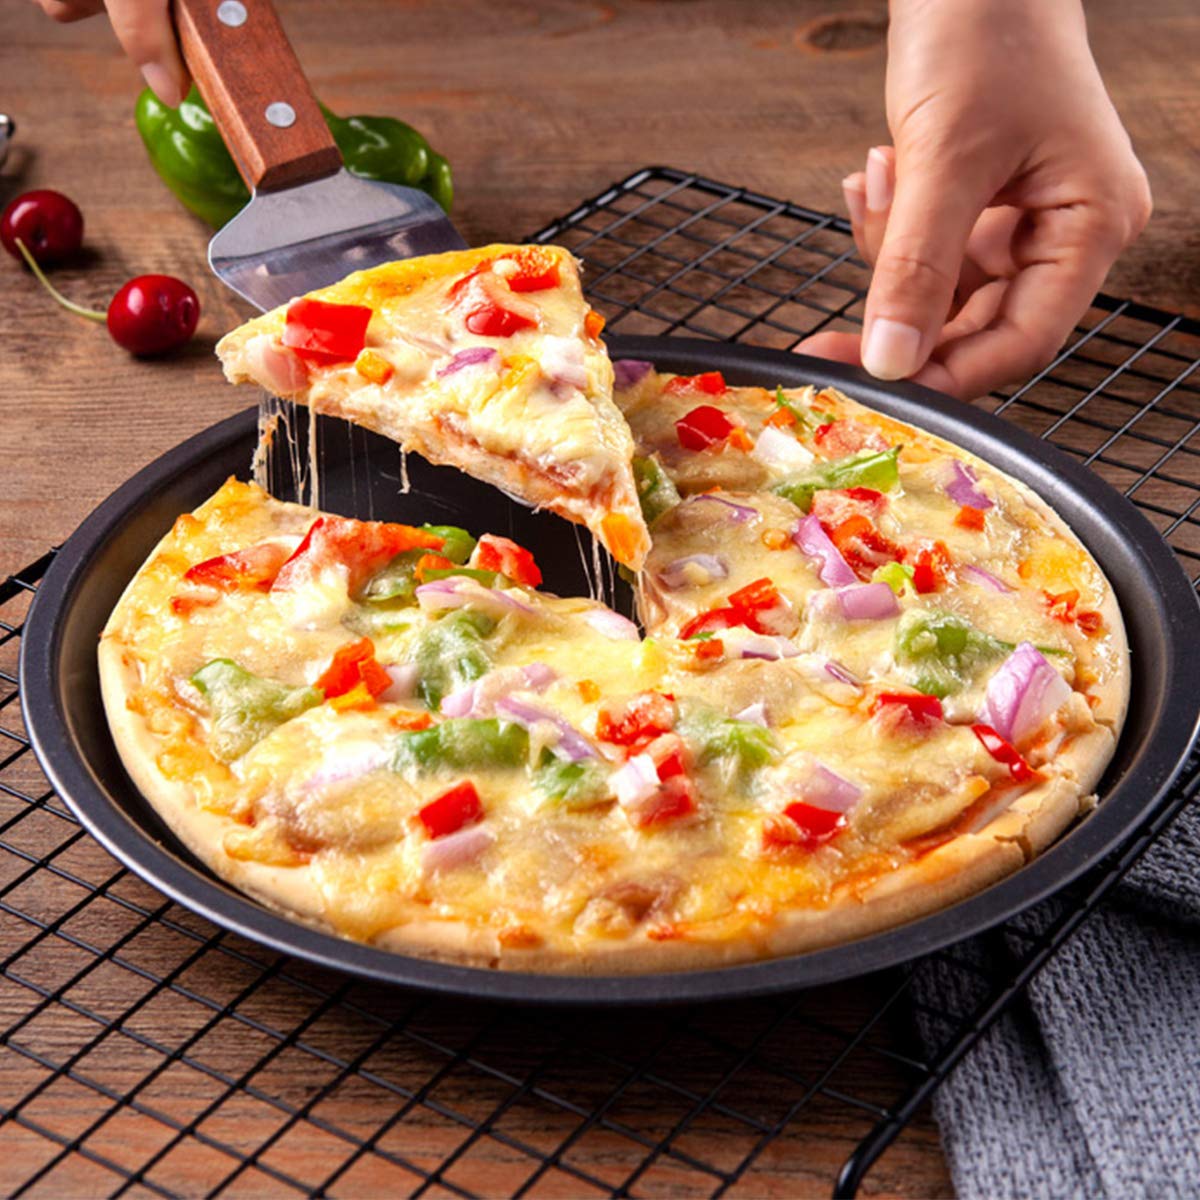 Bekith 3-Piece Set Non-stick Pizza Pan, Round Premium Bakeware, Black